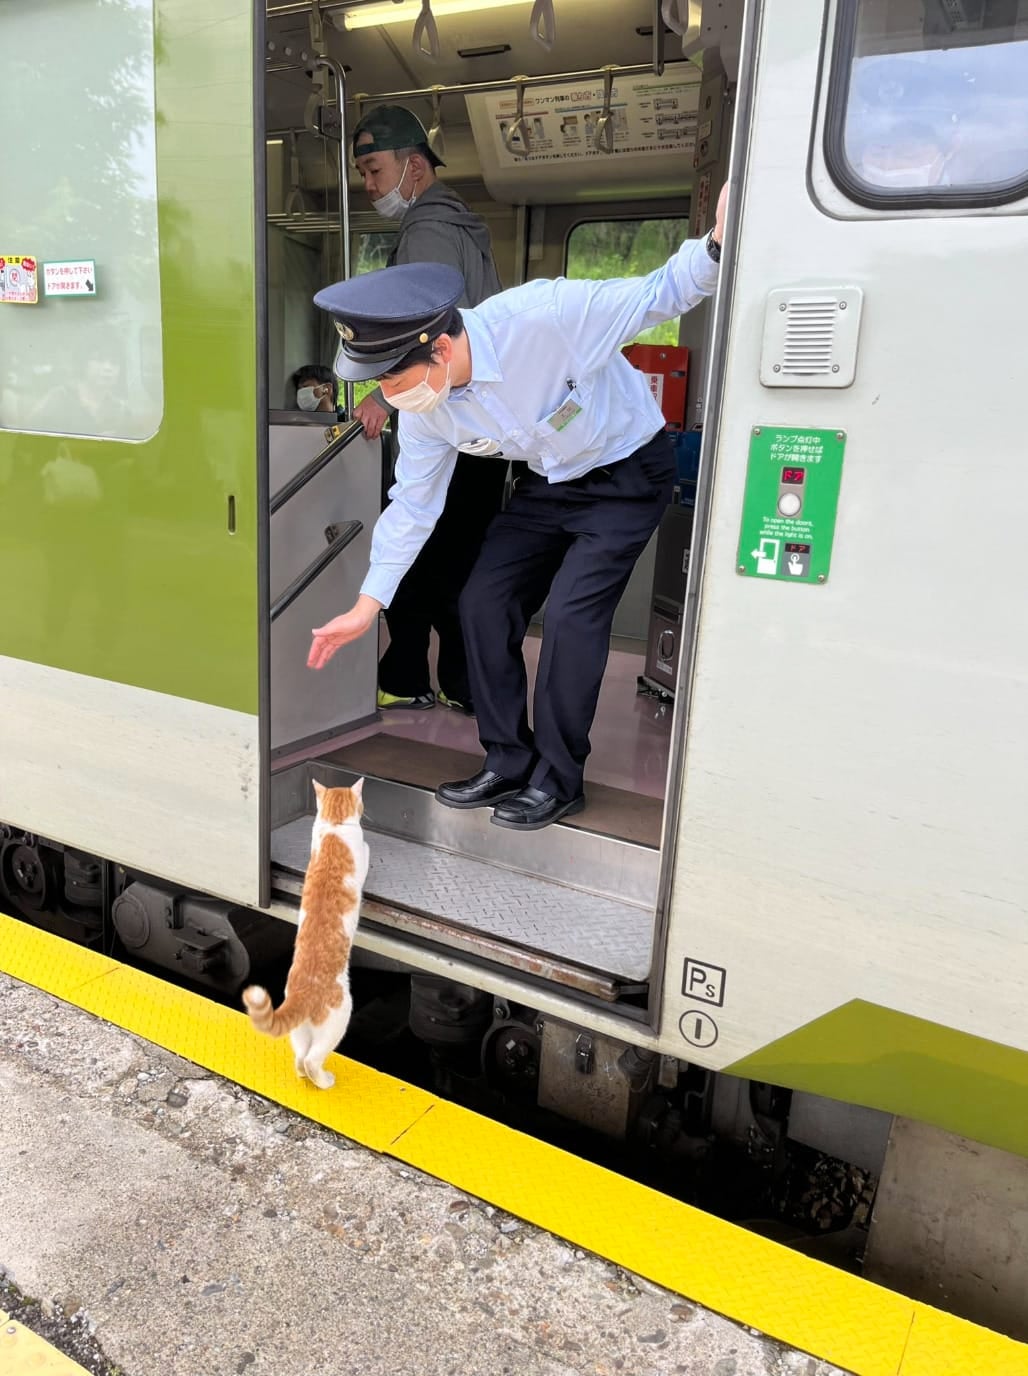 แมวส้มญี่ปุ่นแอบขึ้นรถไฟฟรี